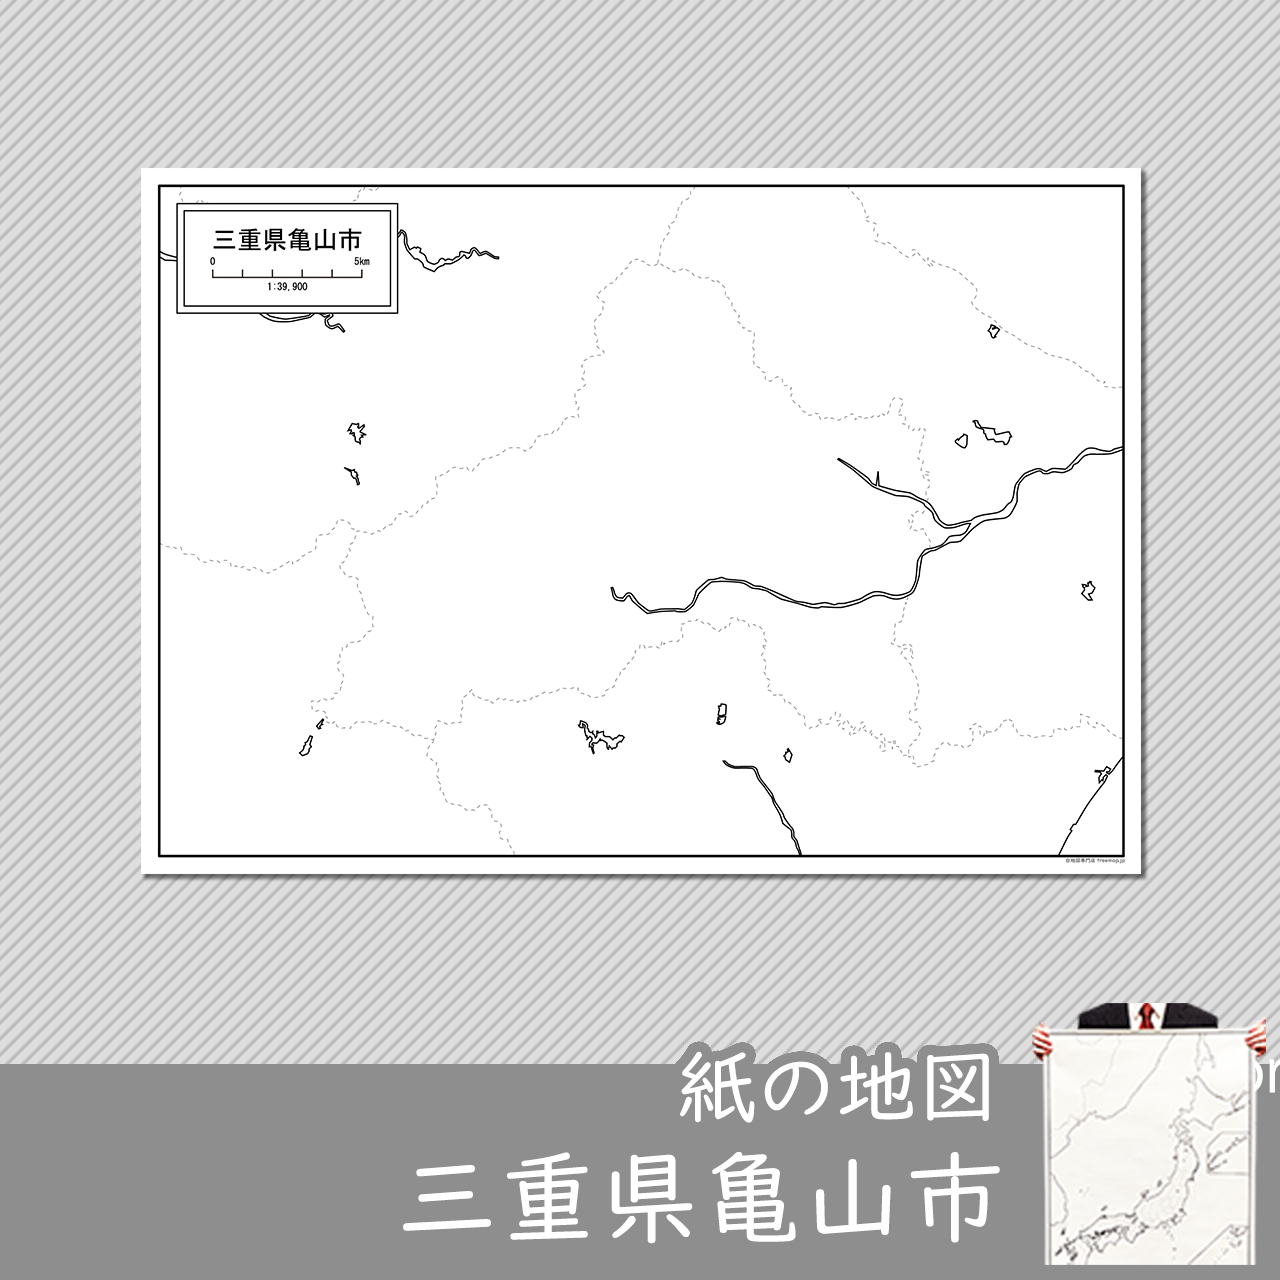 亀山市の紙の白地図のサムネイル